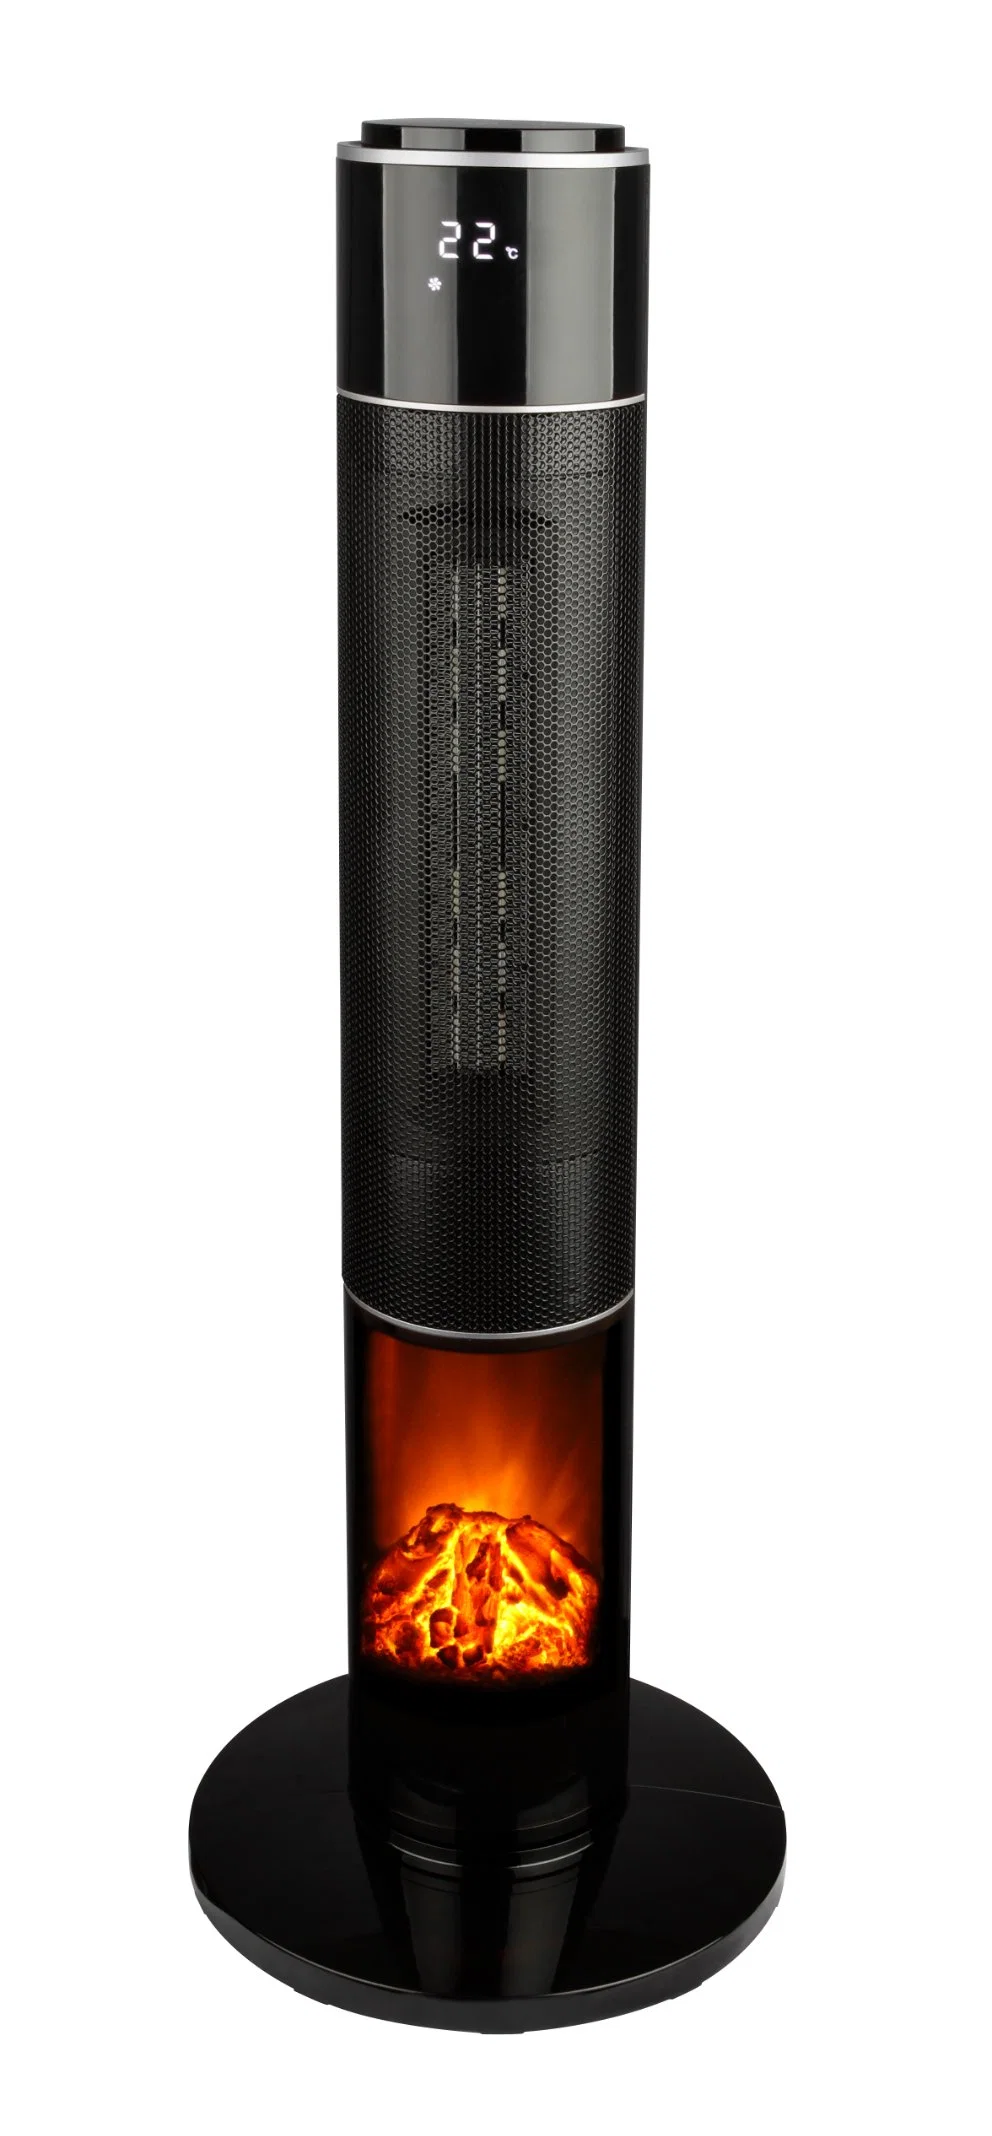 PTC Обогреватель керамический нагревательный элемент PTC с хорошим эффект пламени